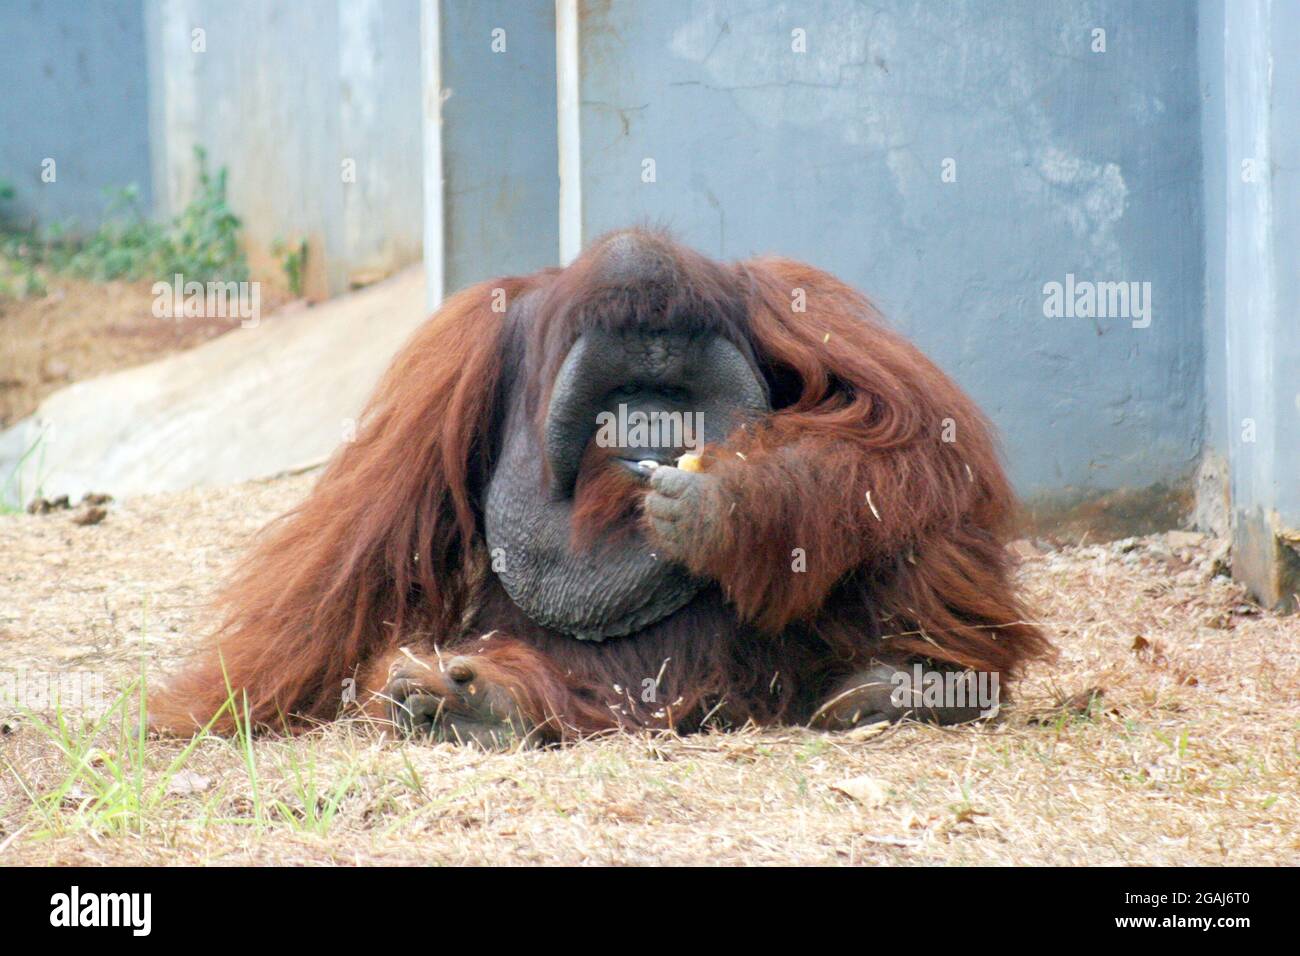 Pongo pygmaeus es una especie de orangután nativo de la isla de Borneo. Junto con el orangután de Sumatra (Pongo abelii). Foto de stock